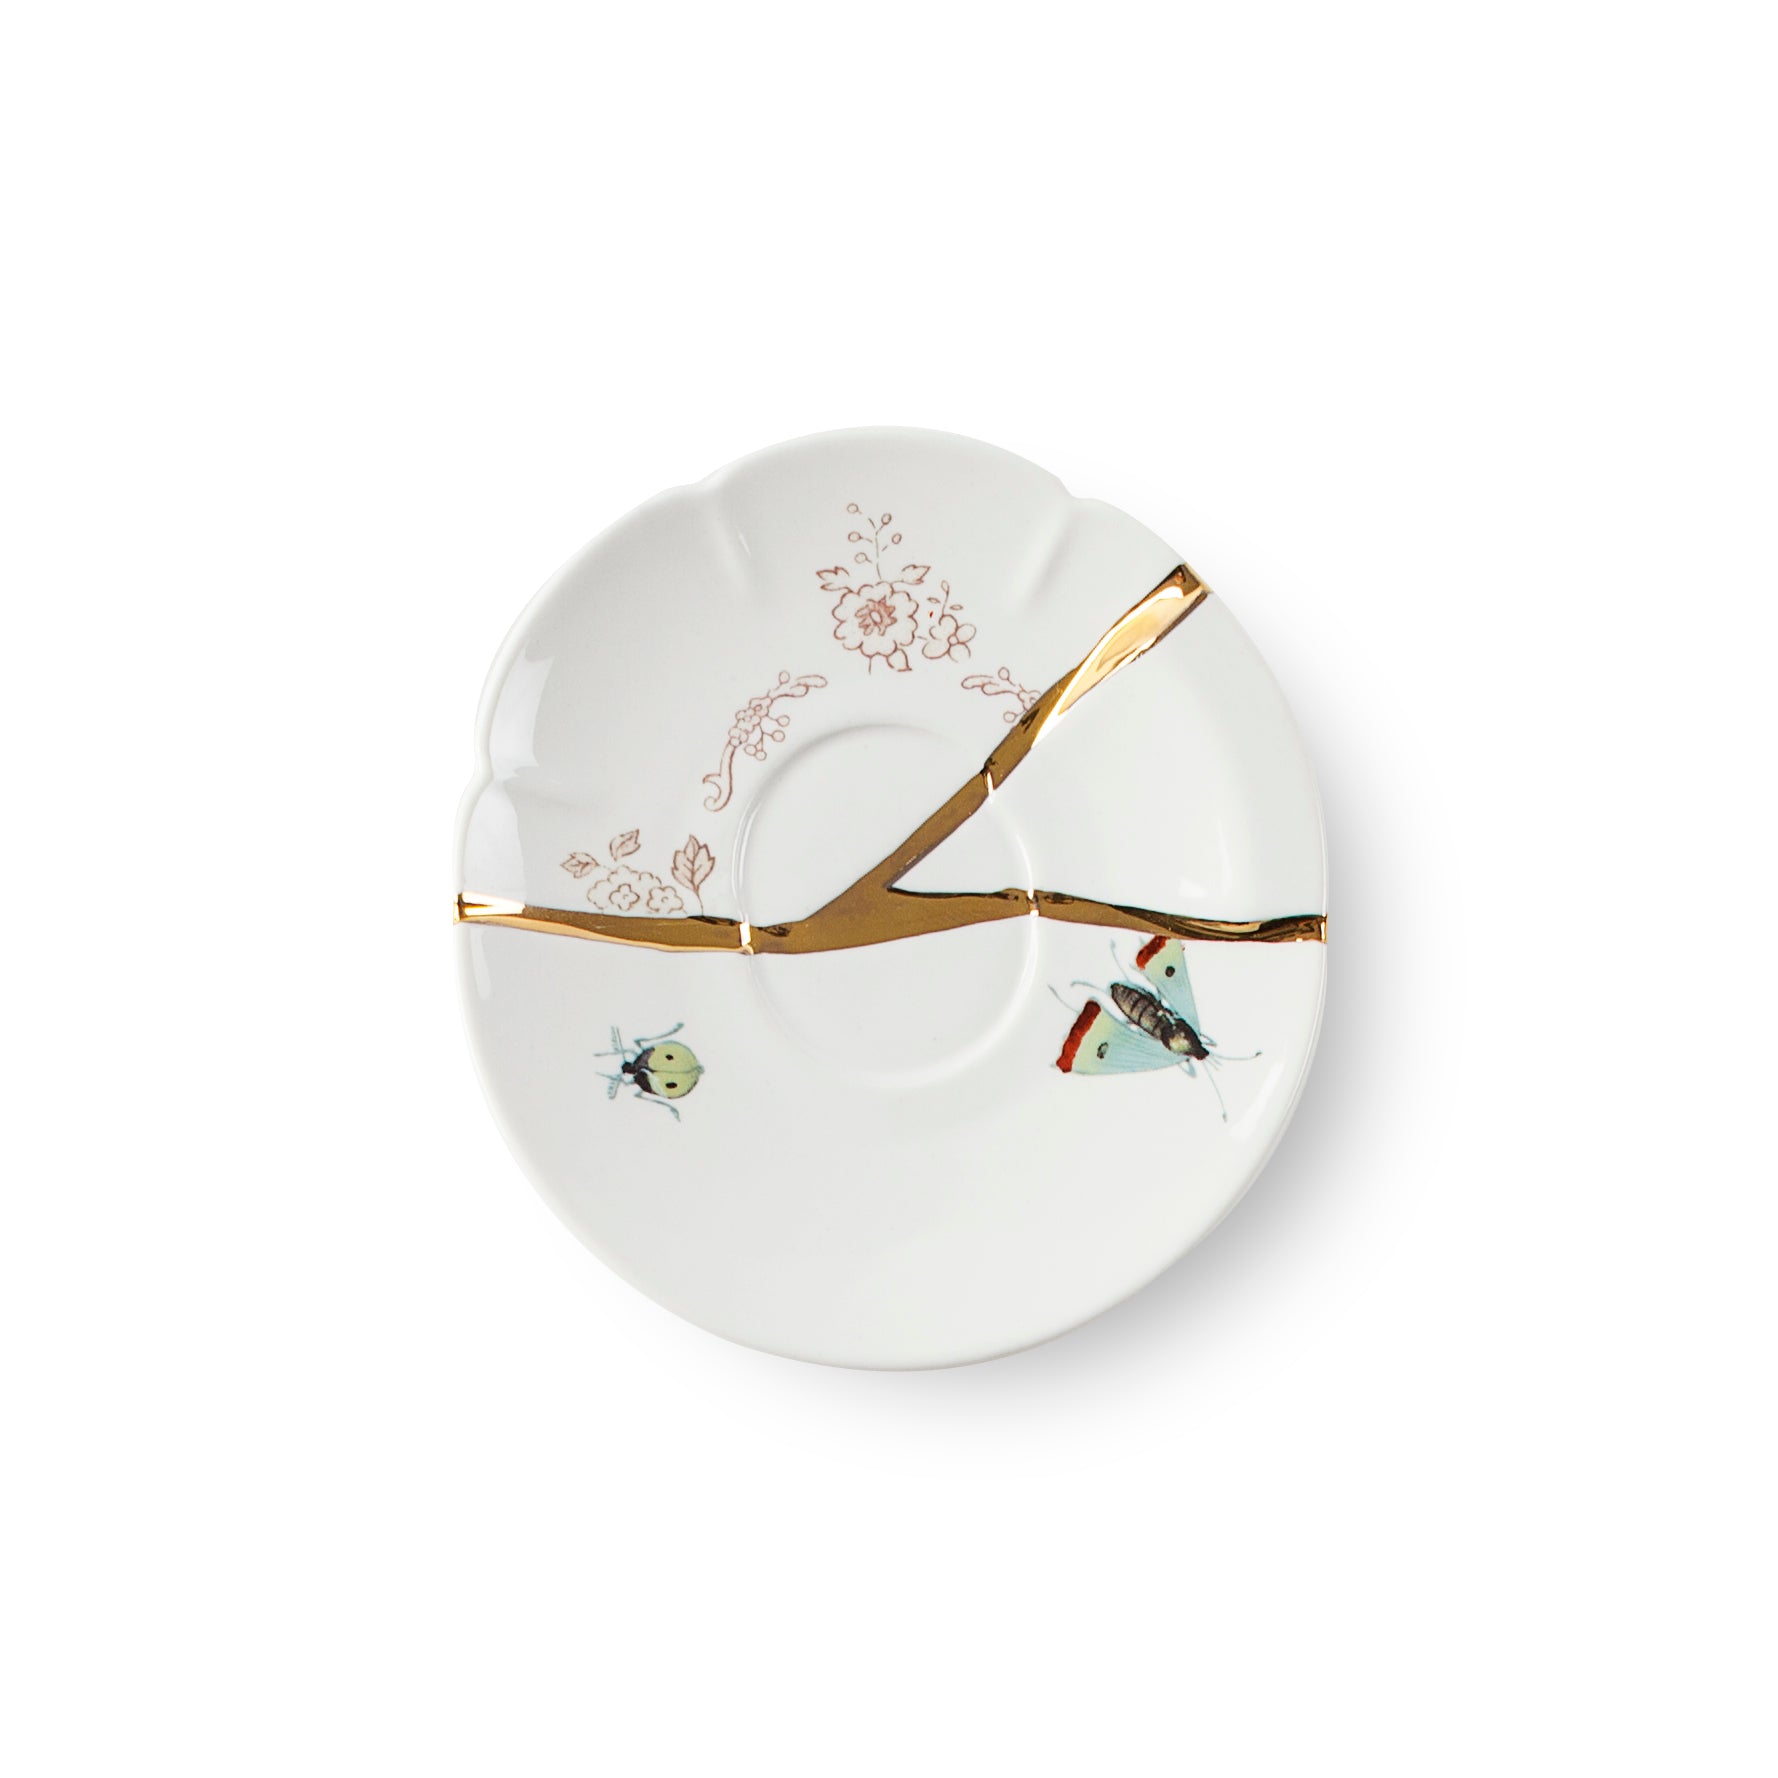 Seletti Kintsugi n°2 Tazzina caffe' con piattino in porcellana